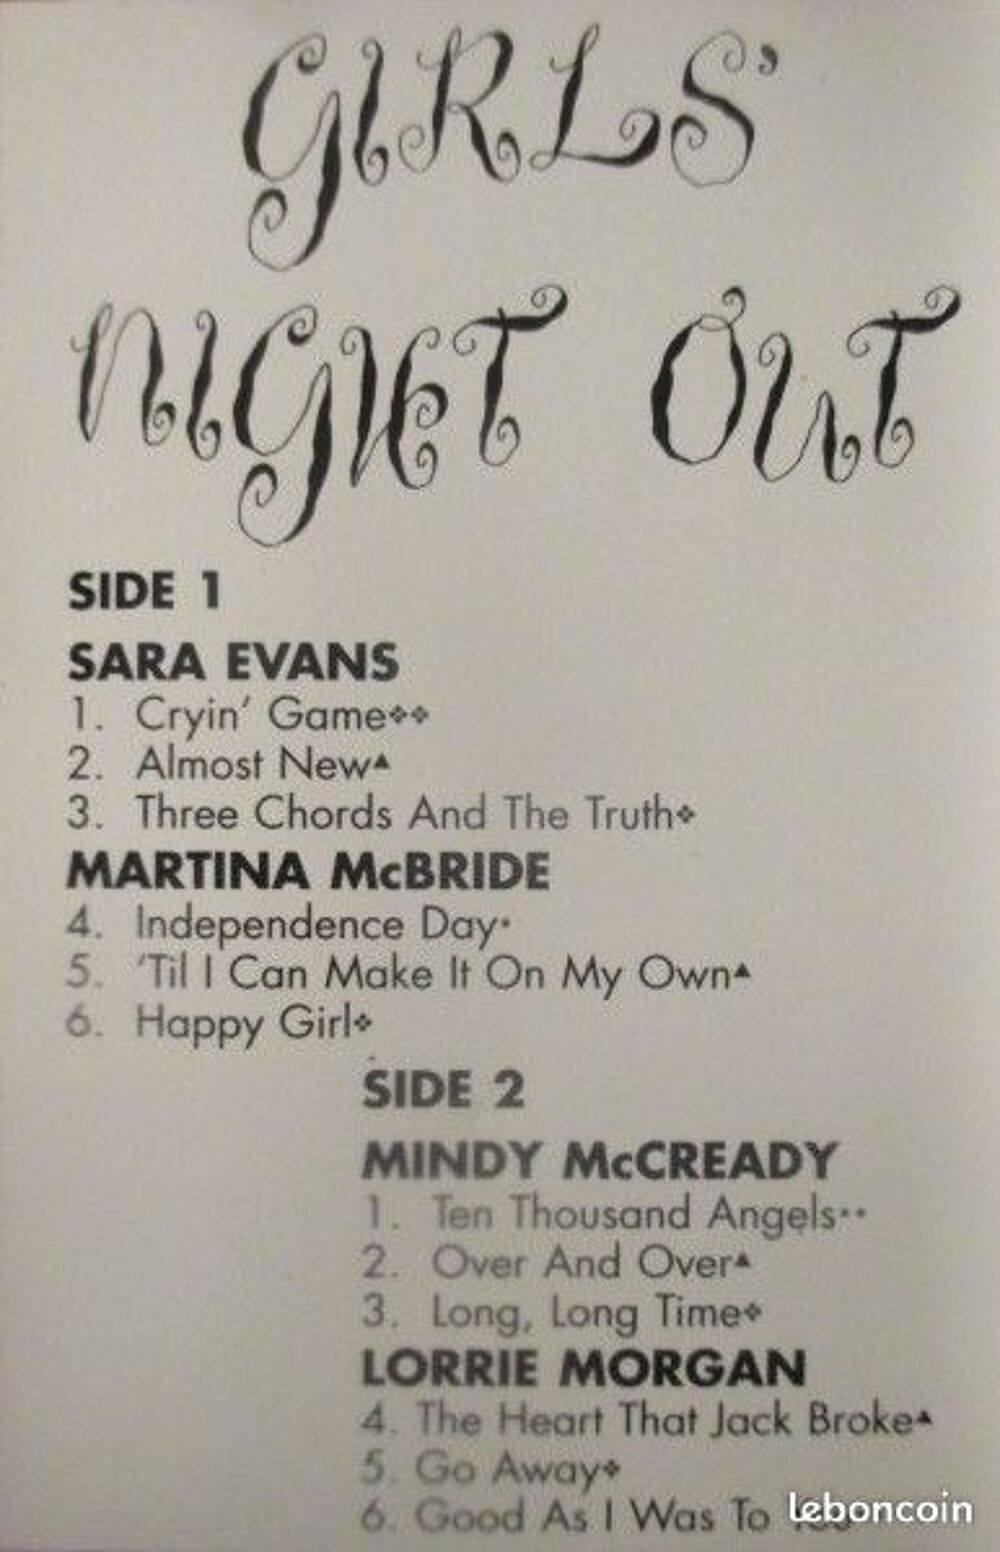 Cassette audio Girls' night Out CD et vinyles